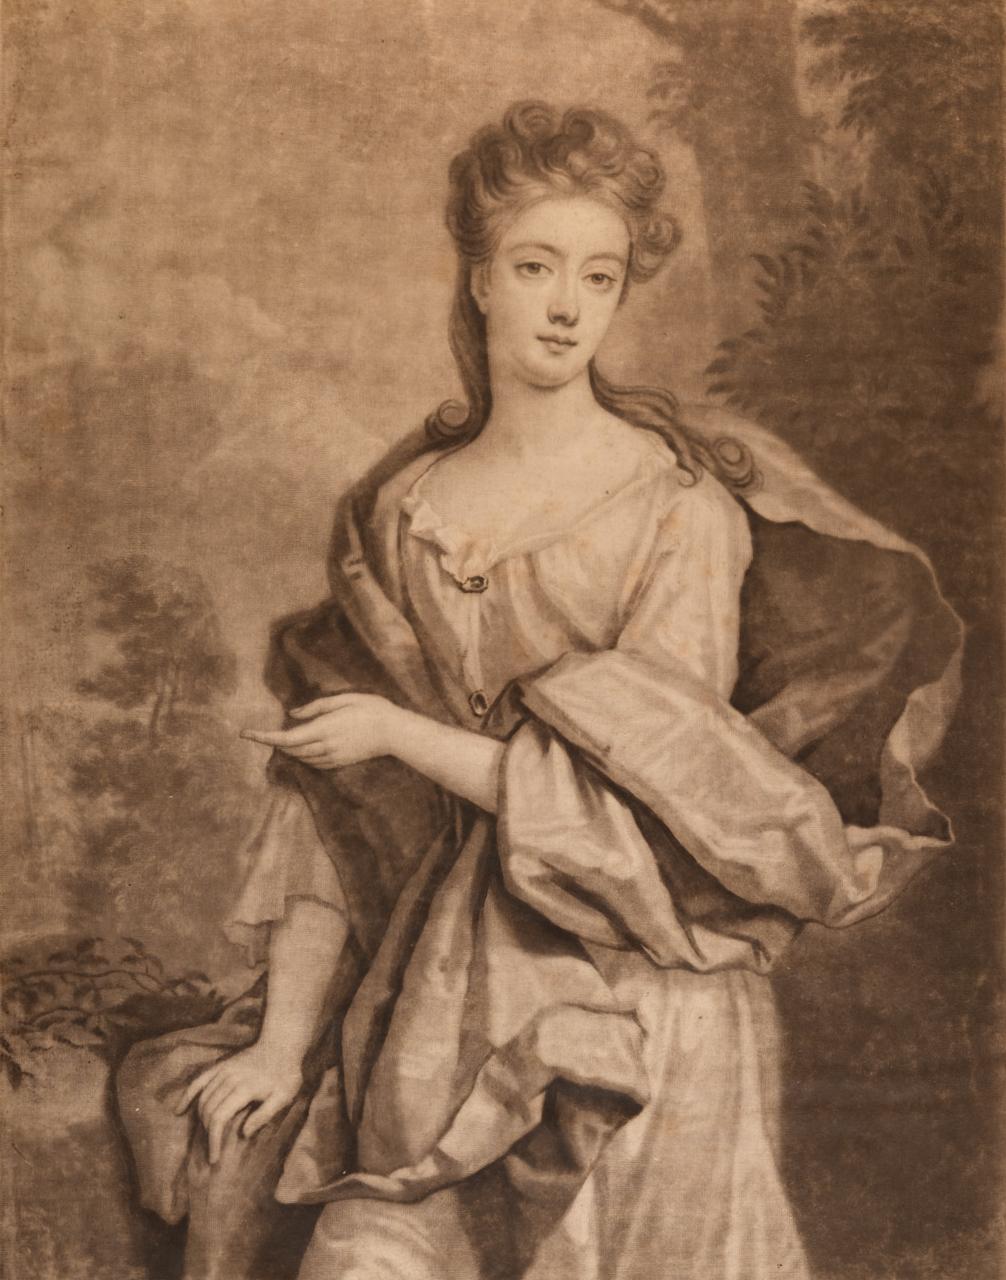  Die Herzogin von St. Albans: Ein Porträt aus dem 17. Jahrhundert nach einem Kneller-Gemälde